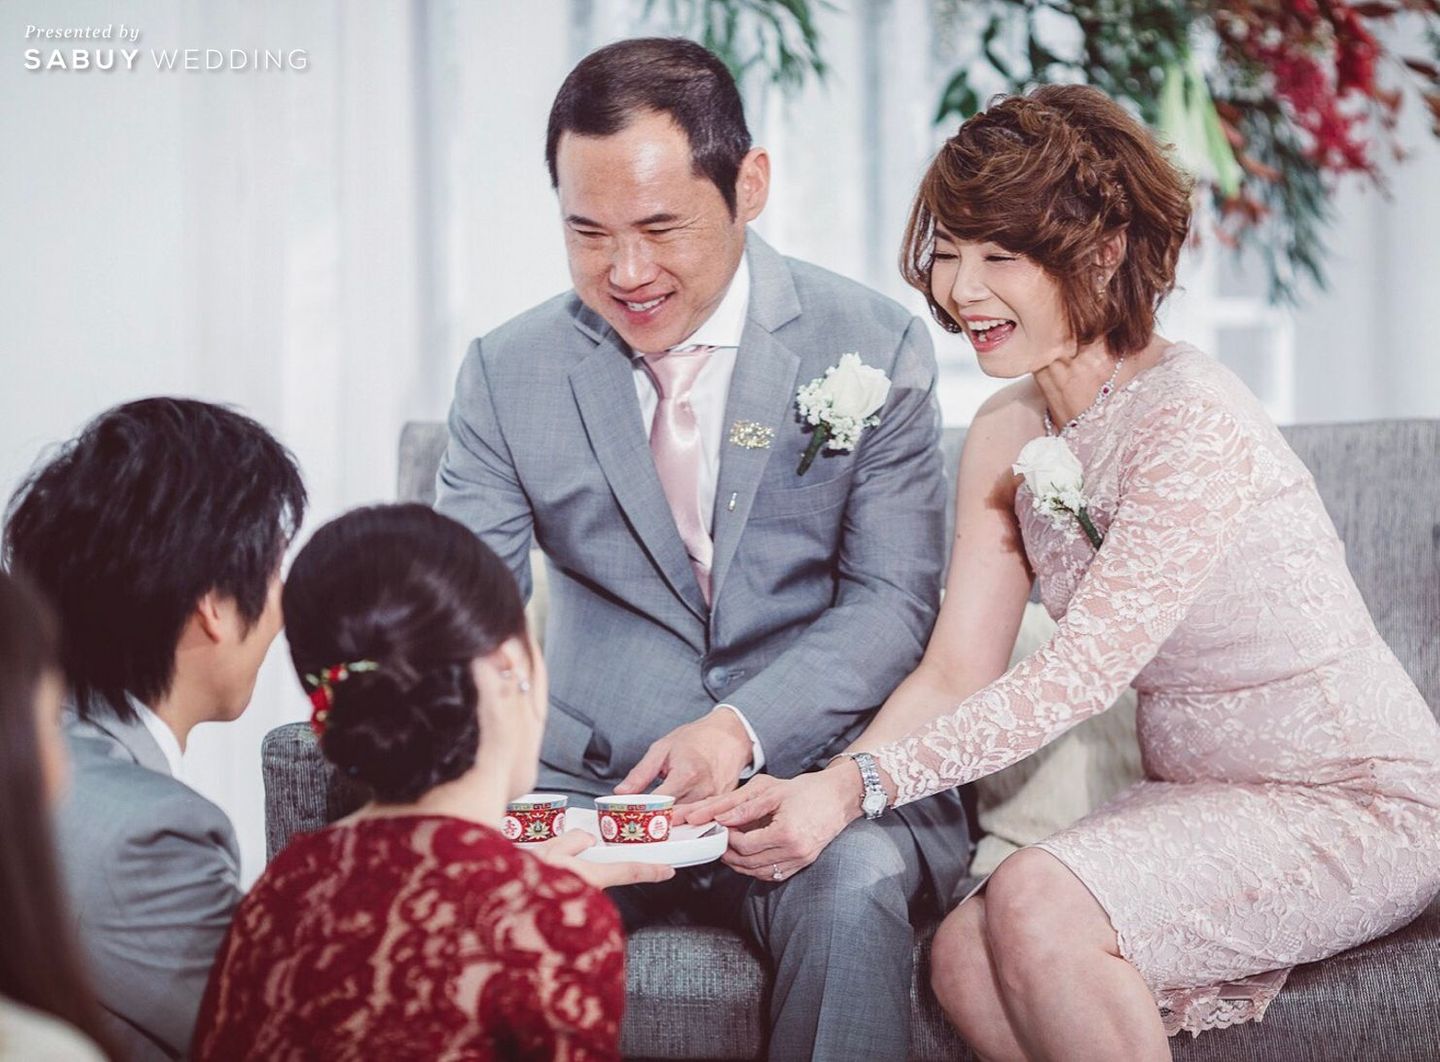 พิธีหมั้น,ยกน้ำชา,งานหมั้น รีวิวงานแต่งงาน Gen Y ดีไซน์ทุกจุดให้ถ่ายรูปสวยได้ สไตล์แซ่บซี๊ดดดดด @Bangkok Marriott Sukhumvit